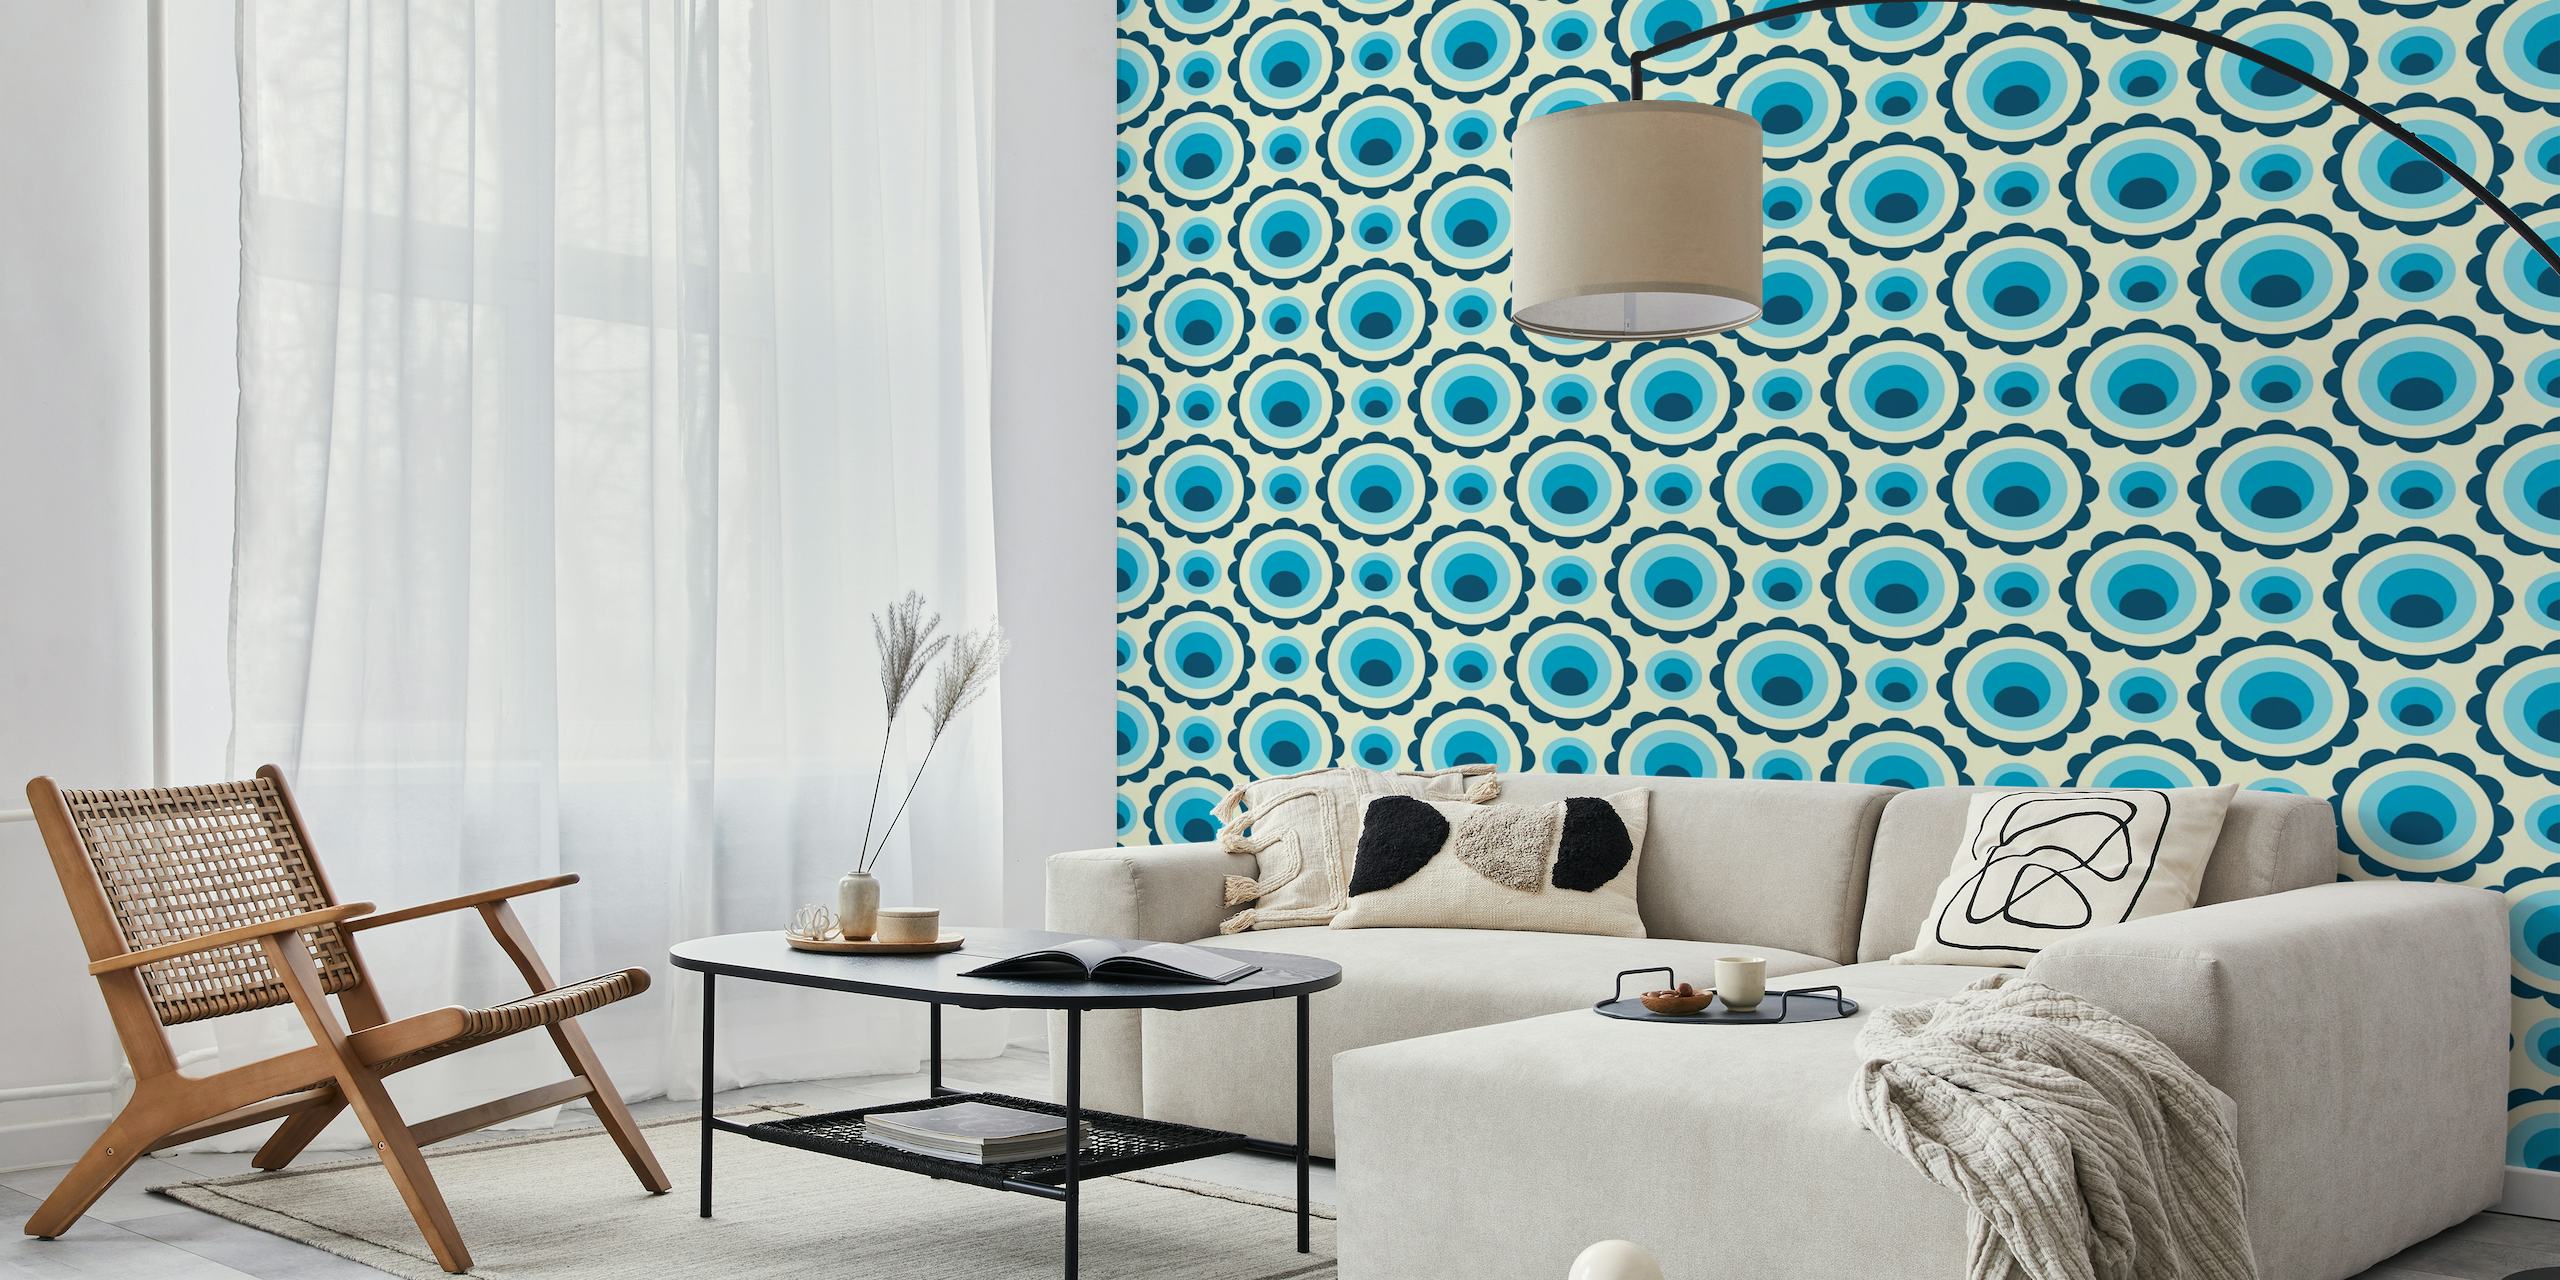 Fotomural círculos abstractos en azul y beige con un patrón retro